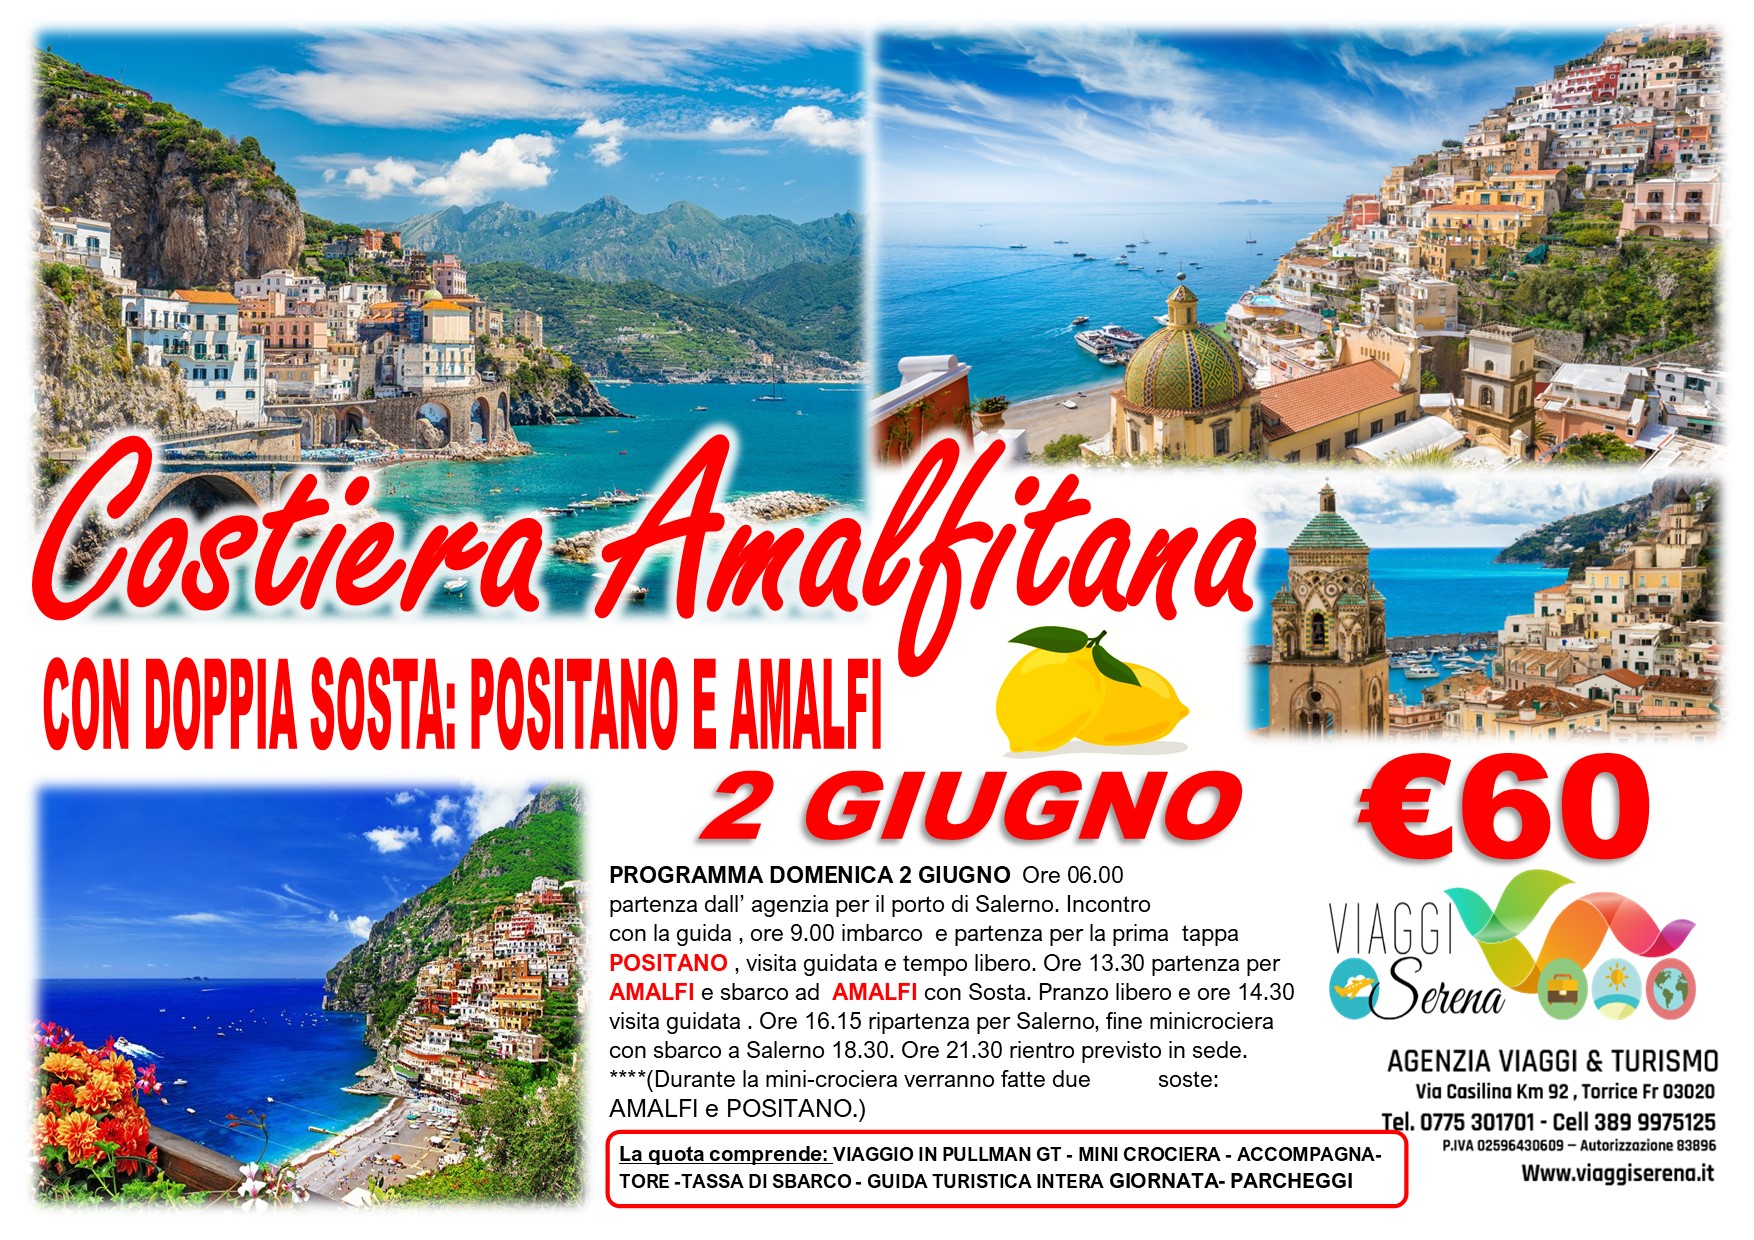 Viaggi di gruppo: Mini Crociera Costiera Amalfitana “Amalfi & Positano” 2 Giugno € 60,00